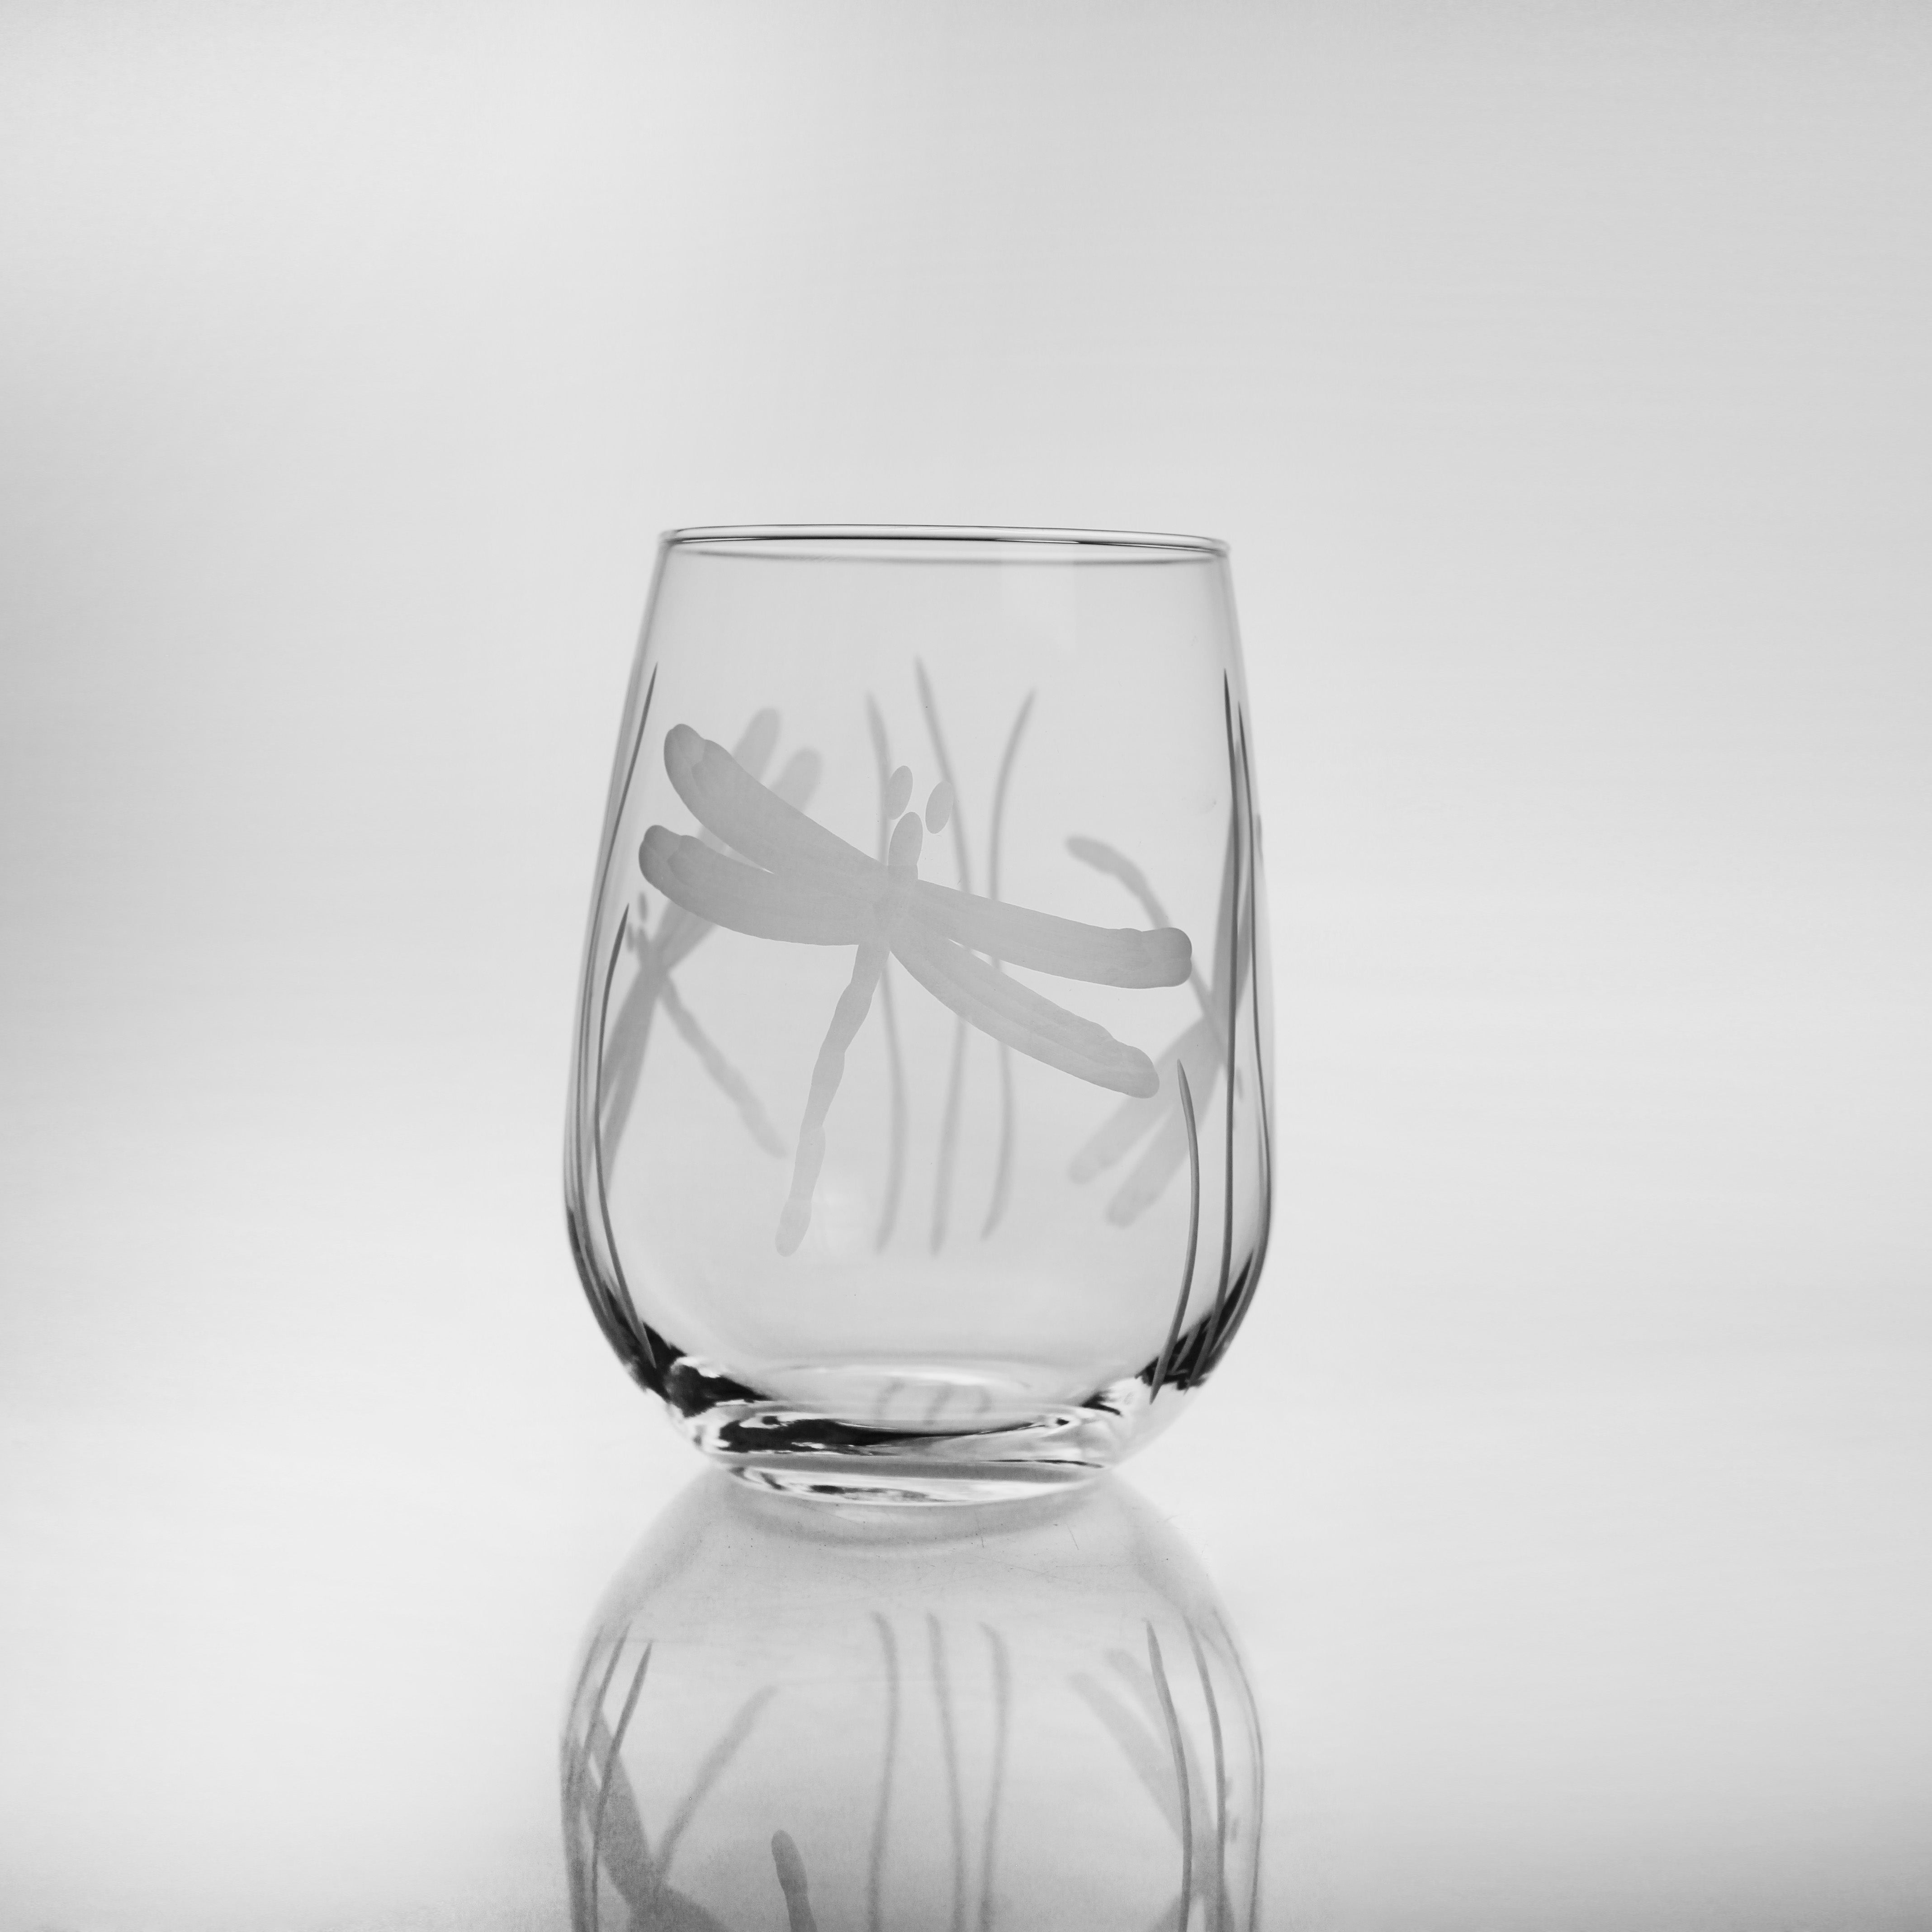 Dragonfly 17oz. Stemless Wine Glass-Set of 4 - MaisonBeach